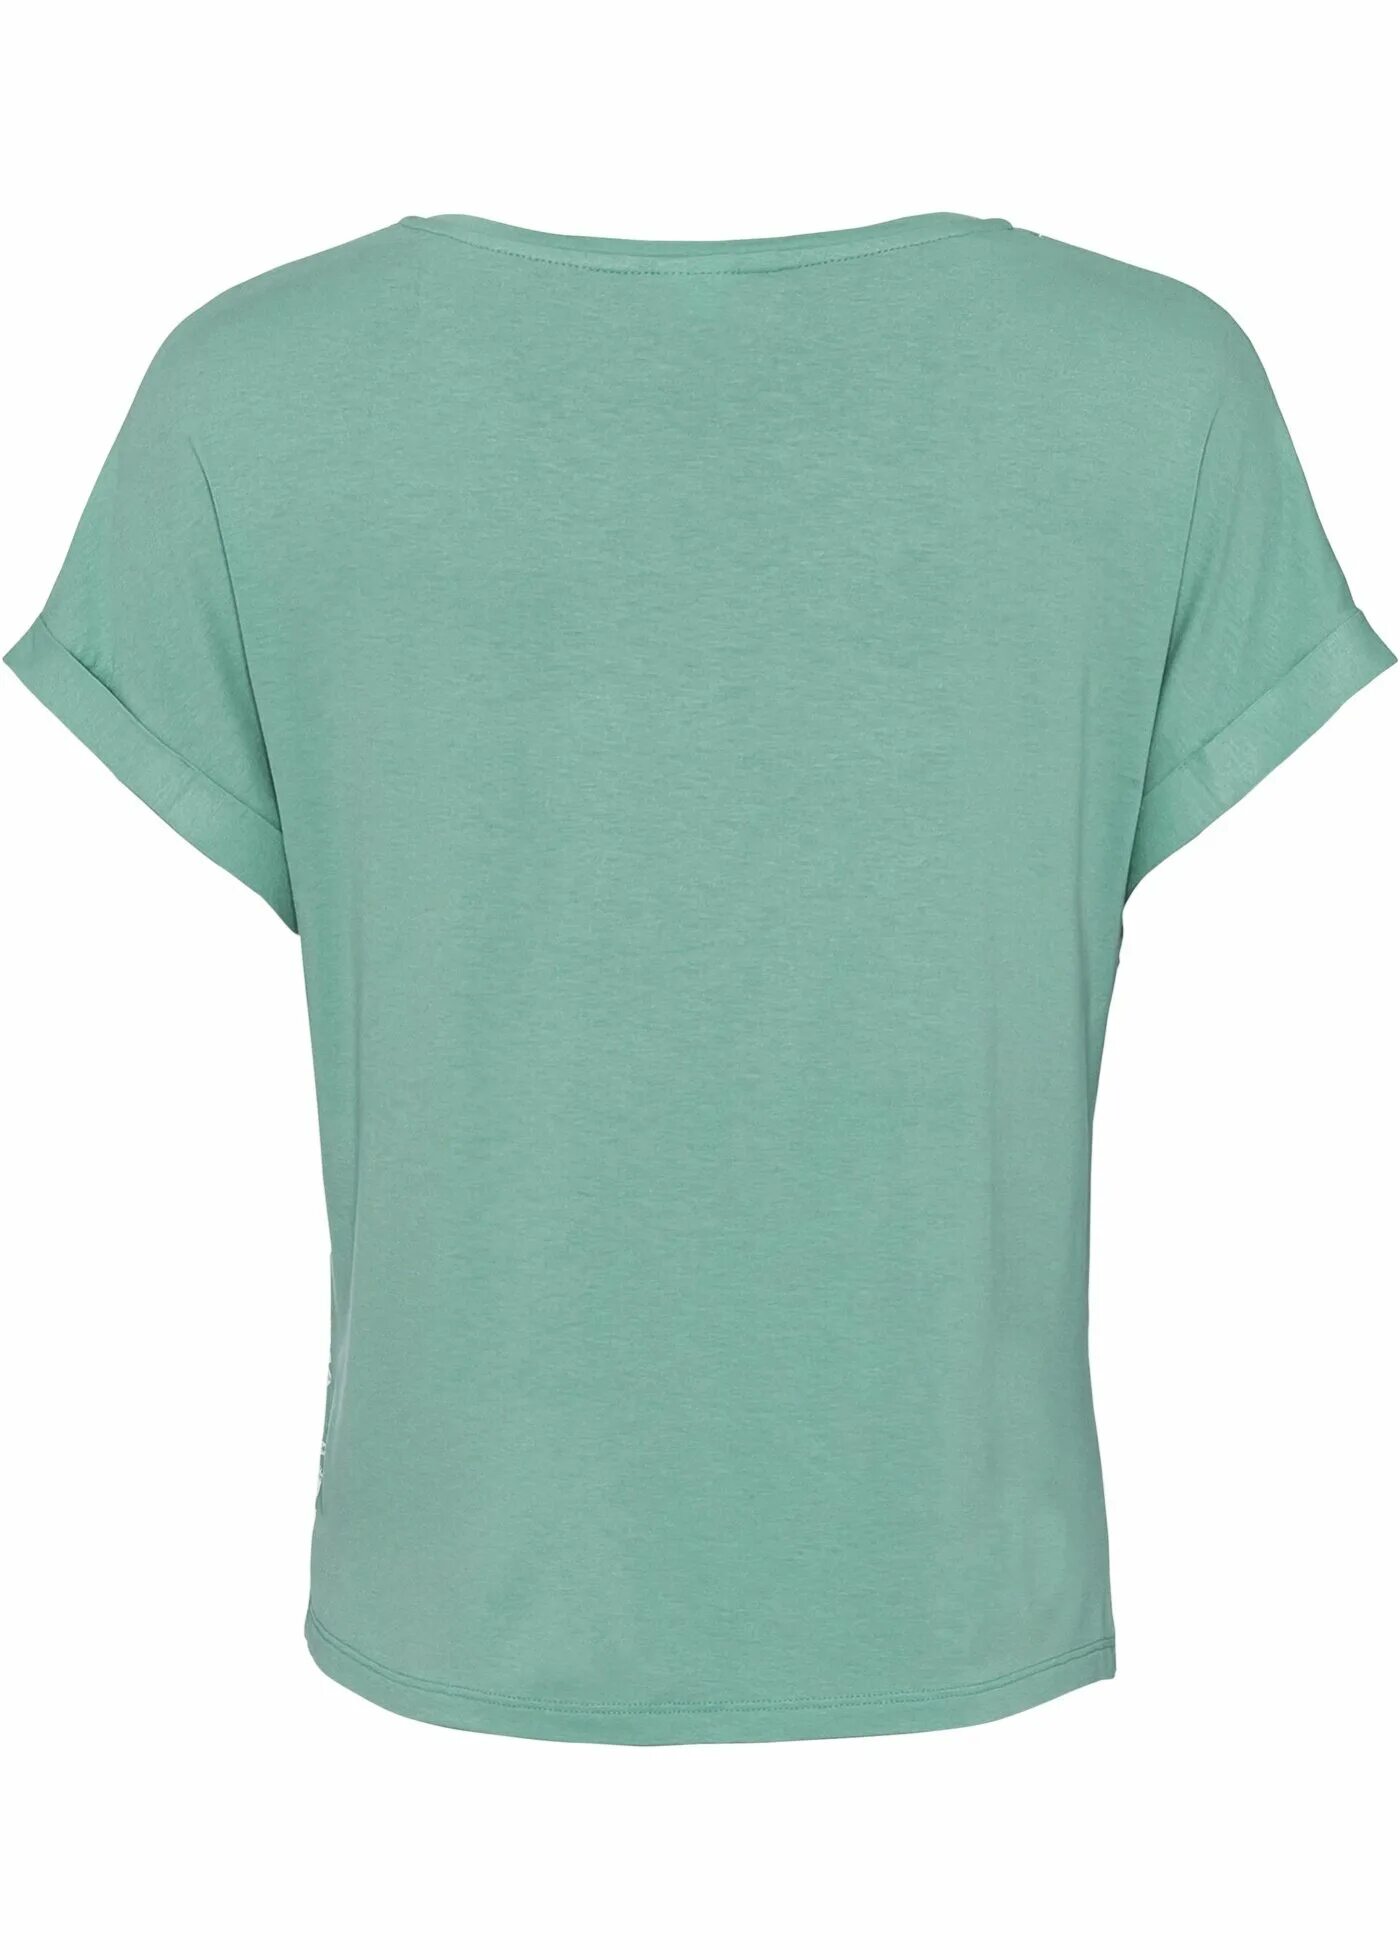 Майки Бонприкс. Зеленая футболка с бежевой горловиной. Распродажа футболок. Футболки bonprix зеленые.